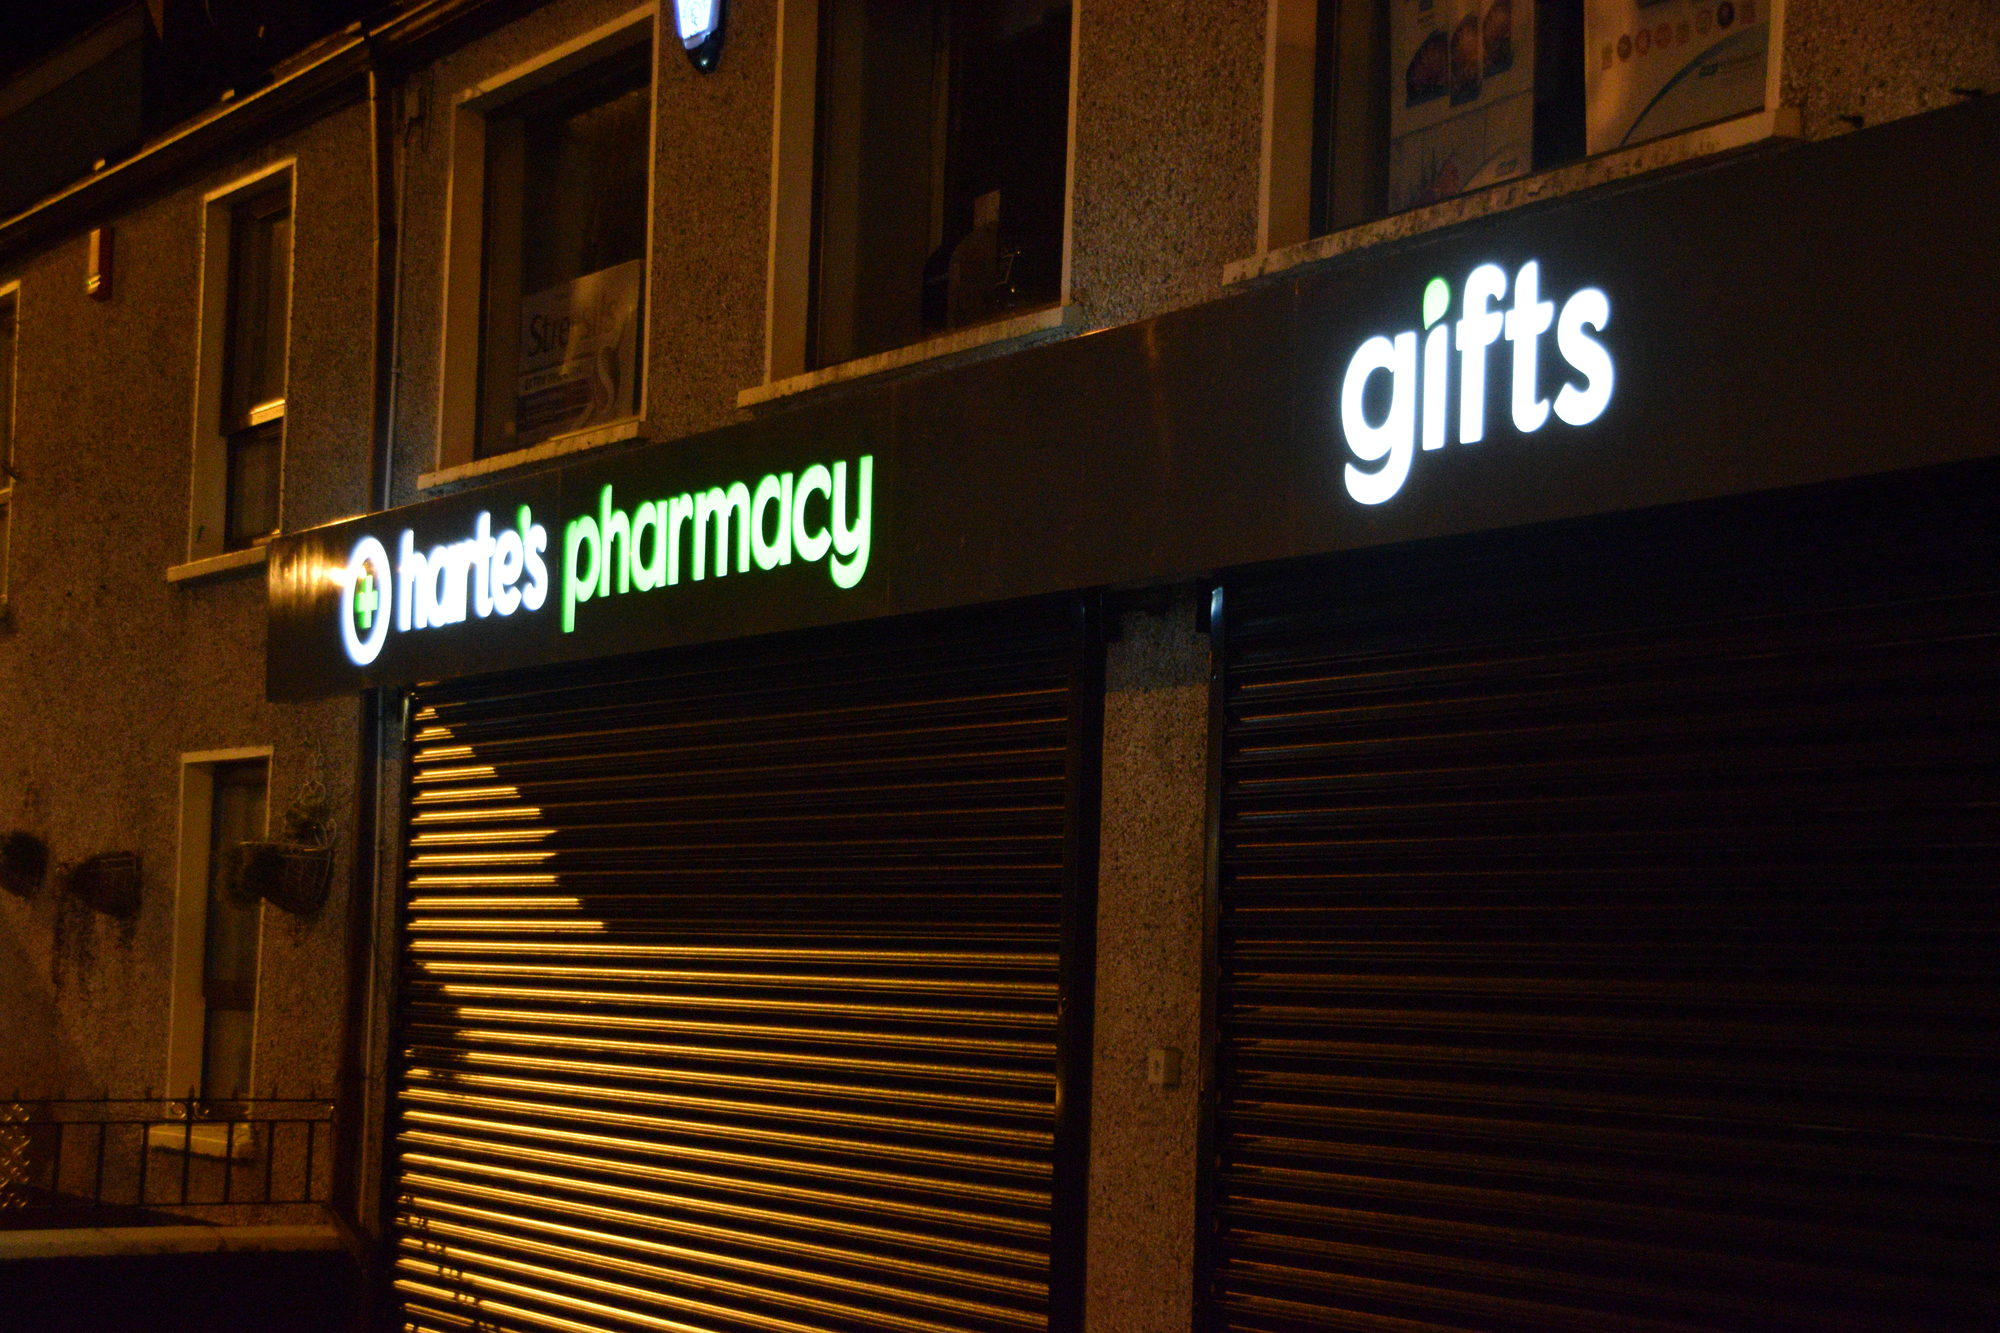 Hartes Pharmacy